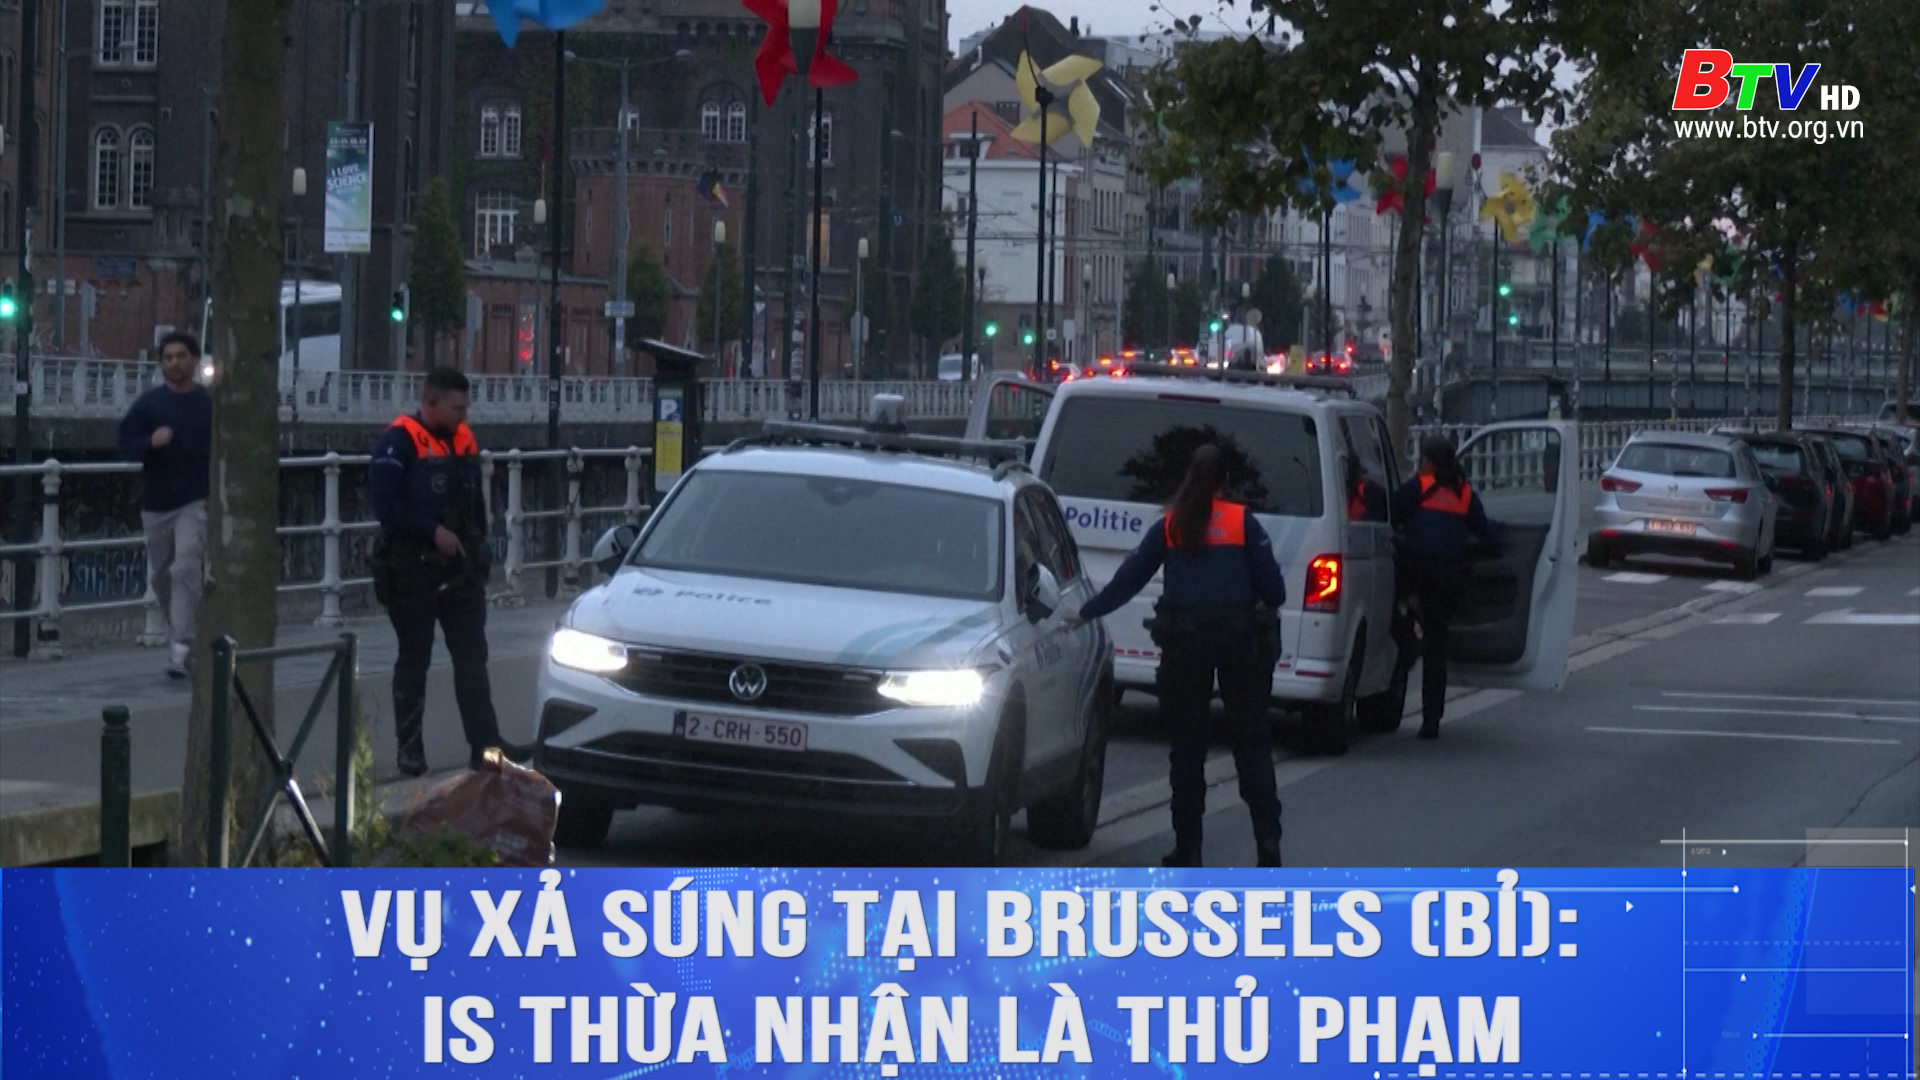 Vụ xả súng tại Brussels (Bỉ): IS thừa nhận là thủ phạm